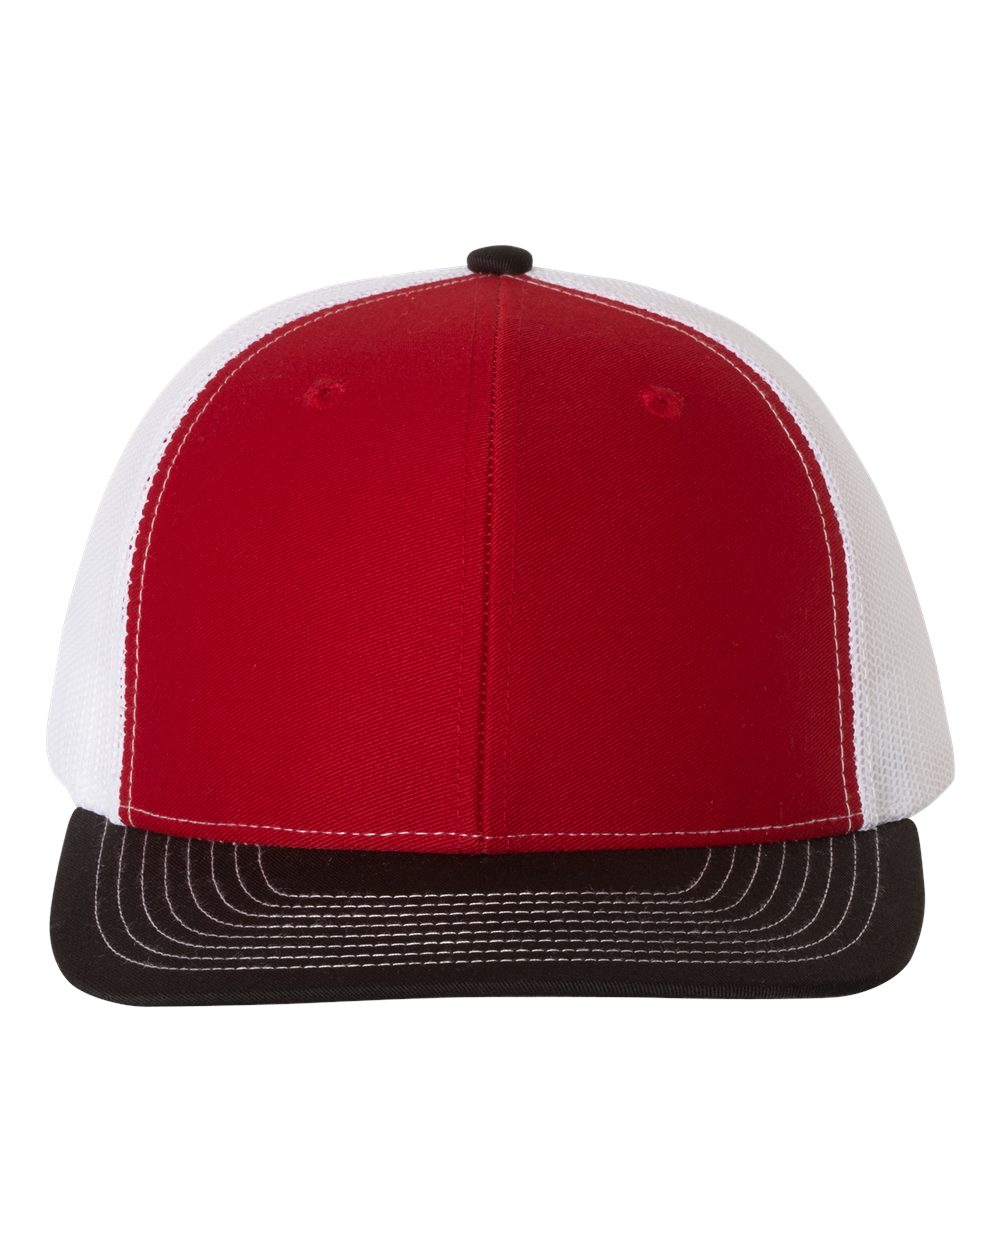 Richardson Snapback Trucker Hat (112) in Red/White/Black